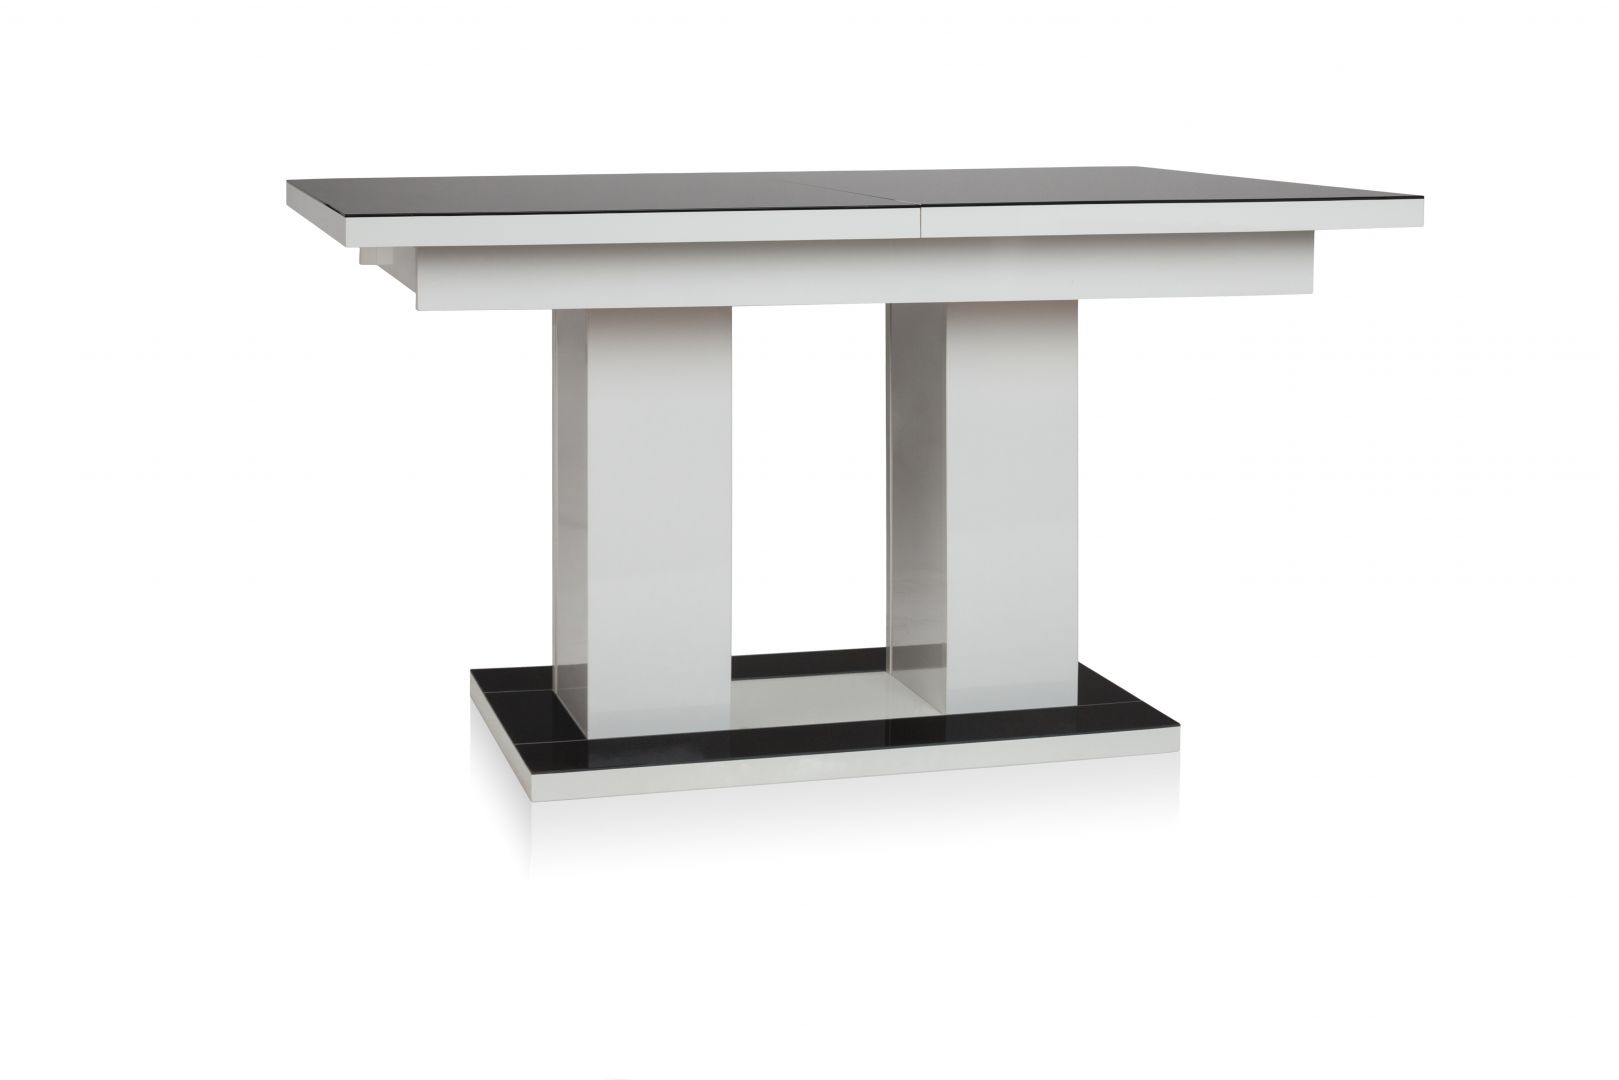 Funkcjonalność jest dużym atutem stołu Vetro. Prostą ławę (o wymiarach 140 x 85 cm) możemy rozłożyć na stół o szerokości 210 cm, w sam raz na typowo rzymskie uczty. Fot. Halex